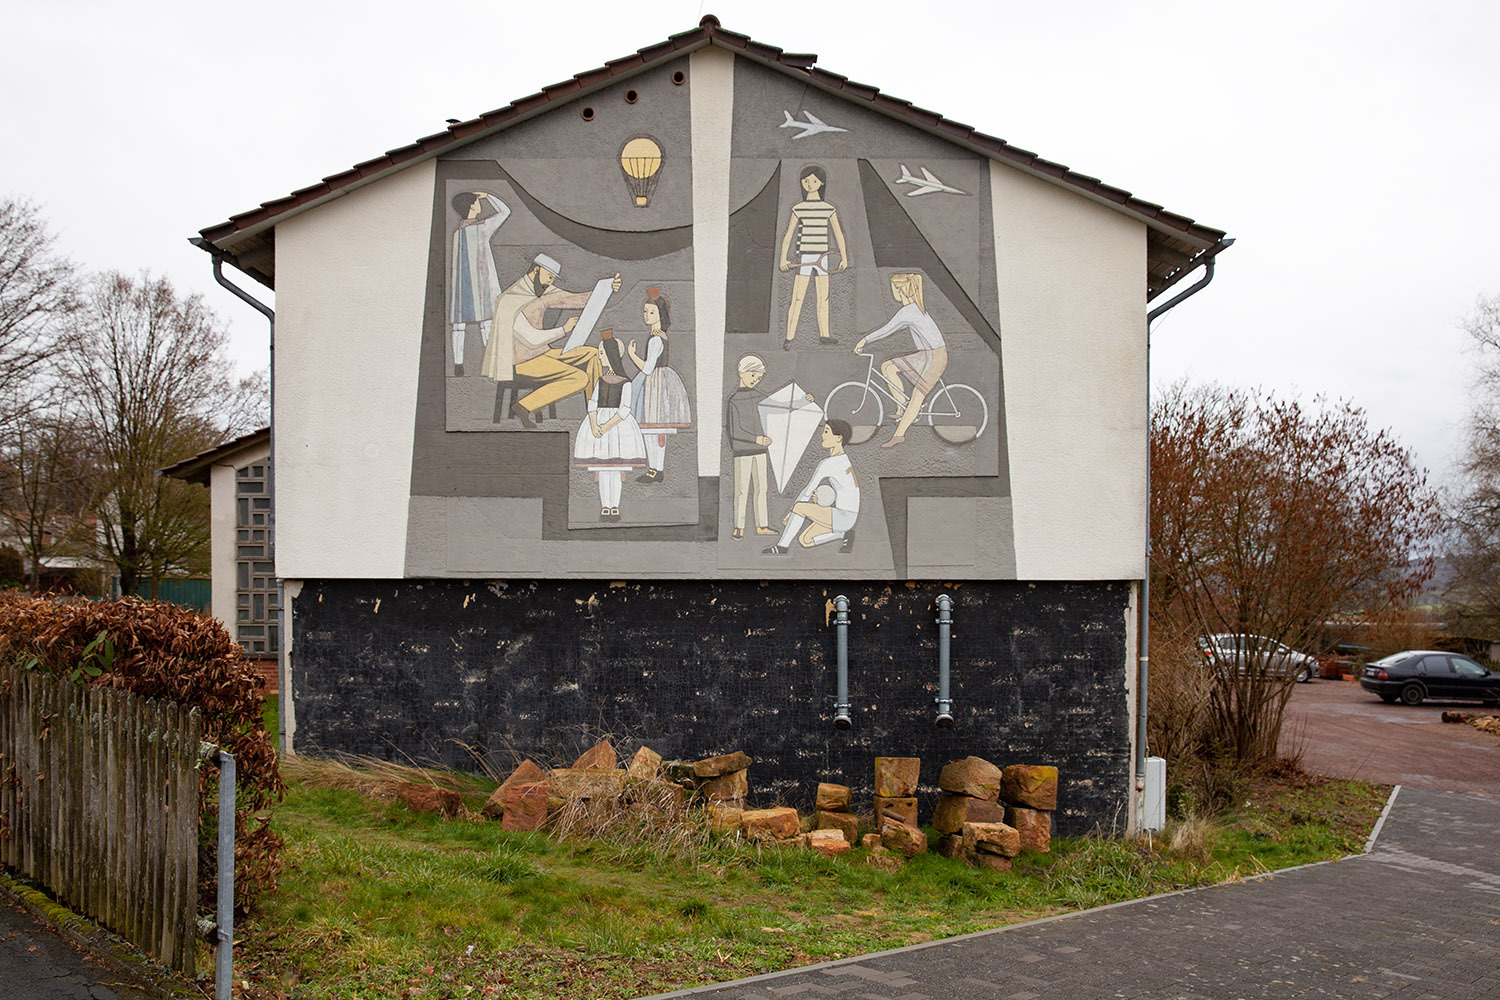 Wandbild an der Giebelseite der früheren Schule in Willingshausen mit gegenständlich gehaltenen Darstellungen zum (früheren und heutigen) Dorfleben in Willingshausen. Sternbald-Foto Hartwig Bambey